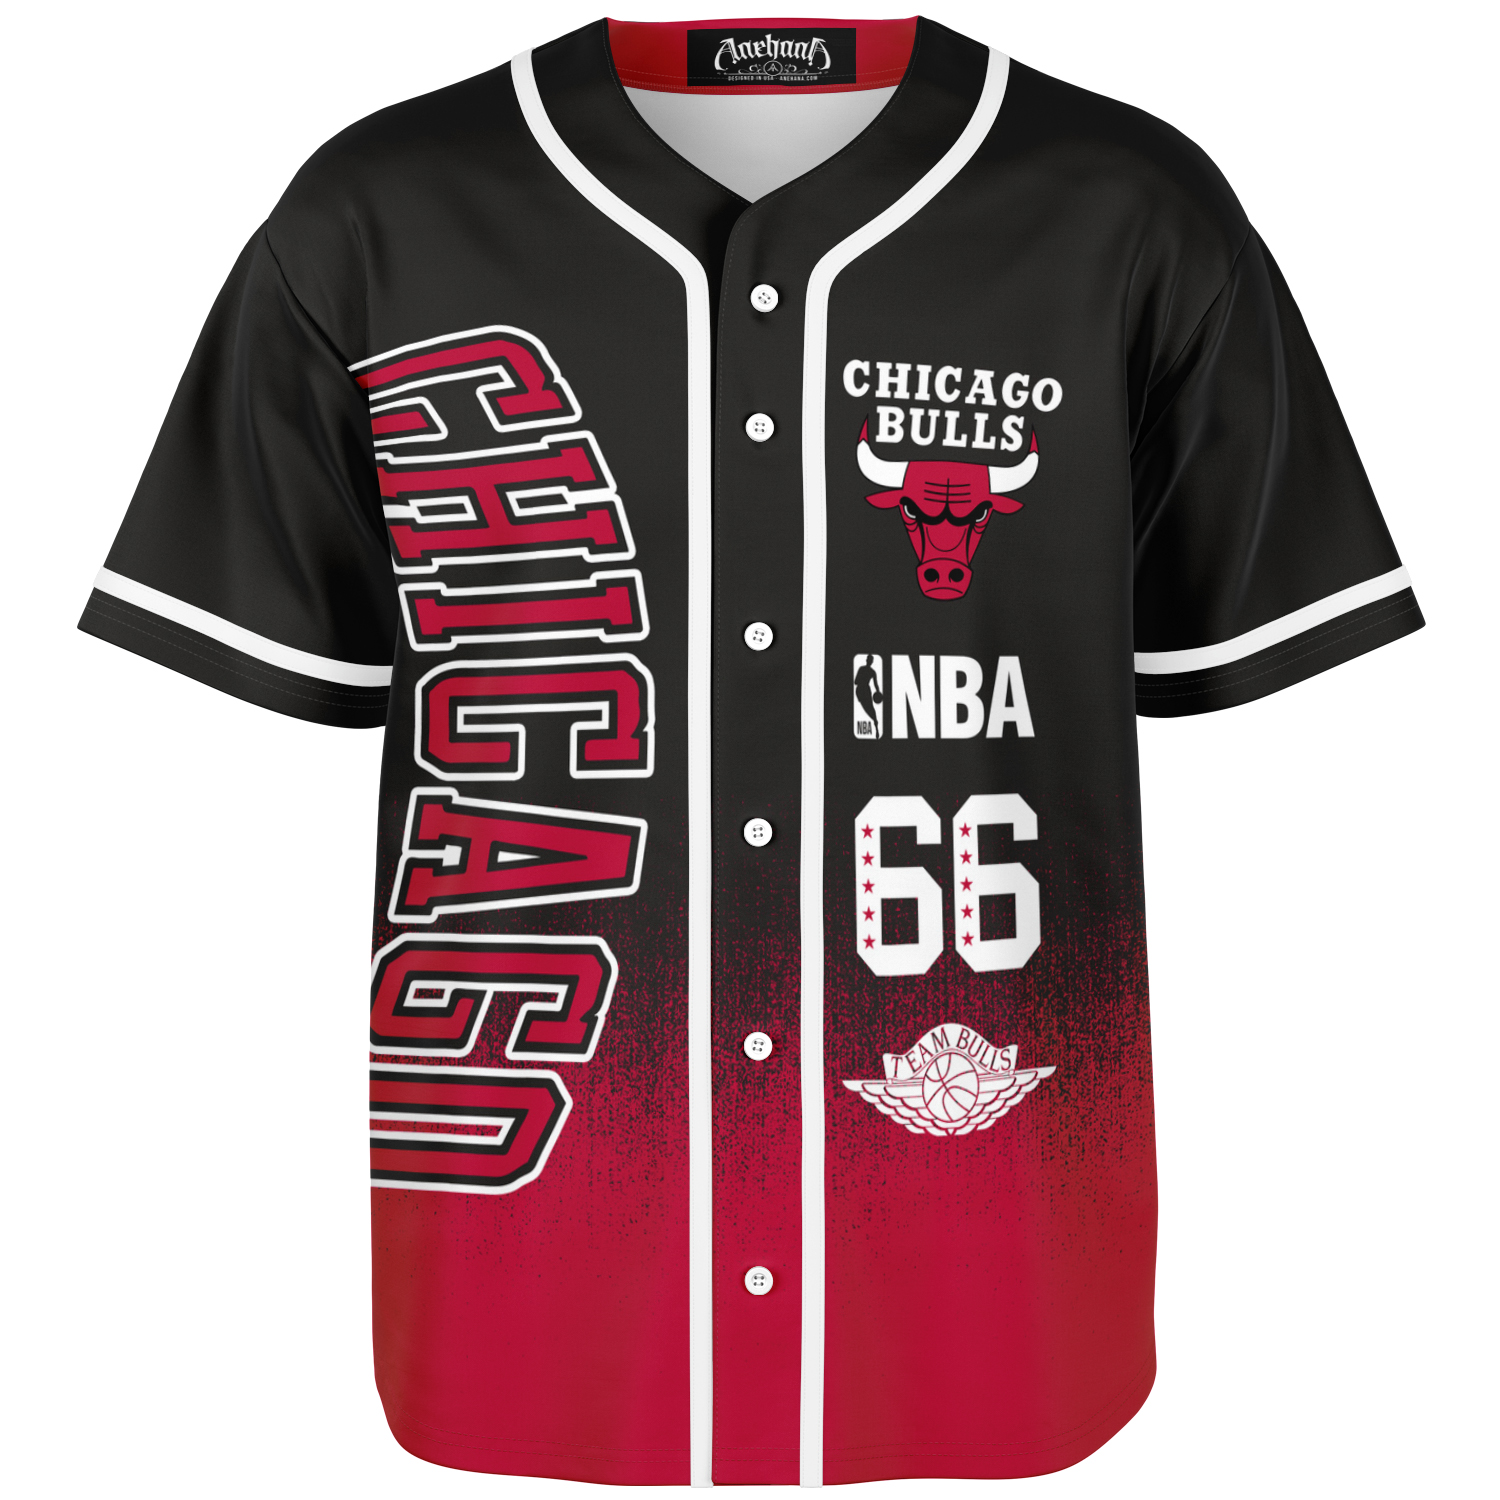 NBA Chicago Bulls Baseball Jersey Size 2XL Black & Gold Basketball Stitched  #66